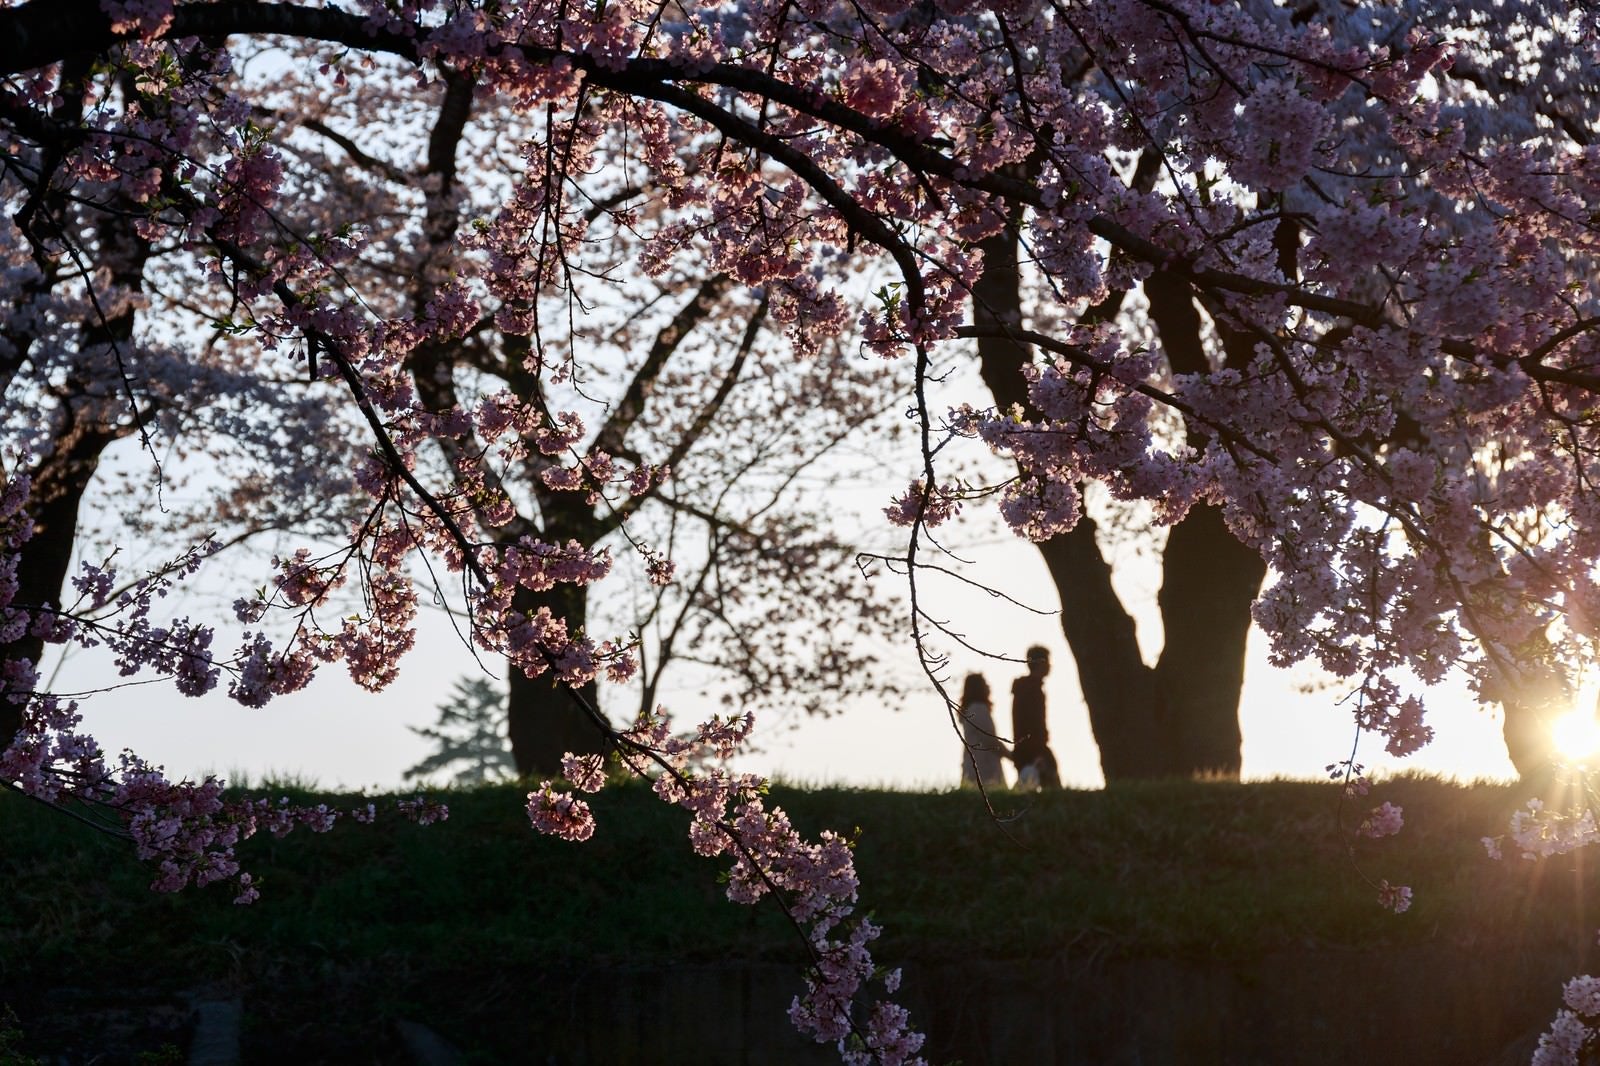 「夕焼け桜と恋人のシルエット」の写真